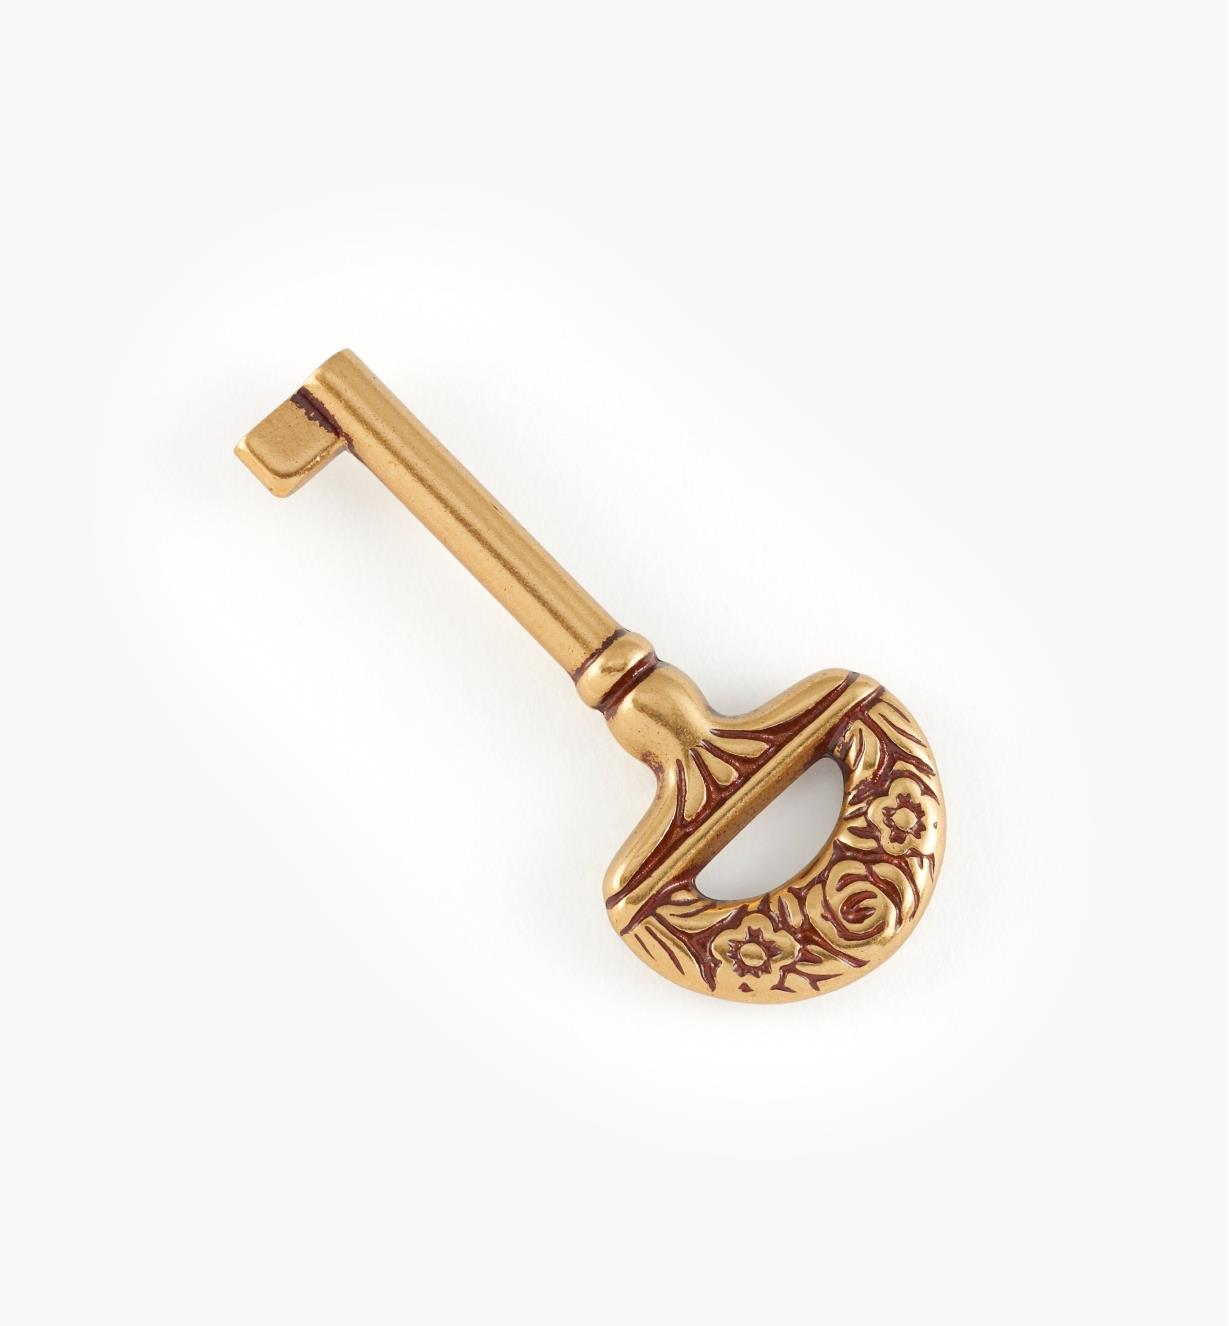 01X3230 - 31mm x 68mm Bronze Patina Key